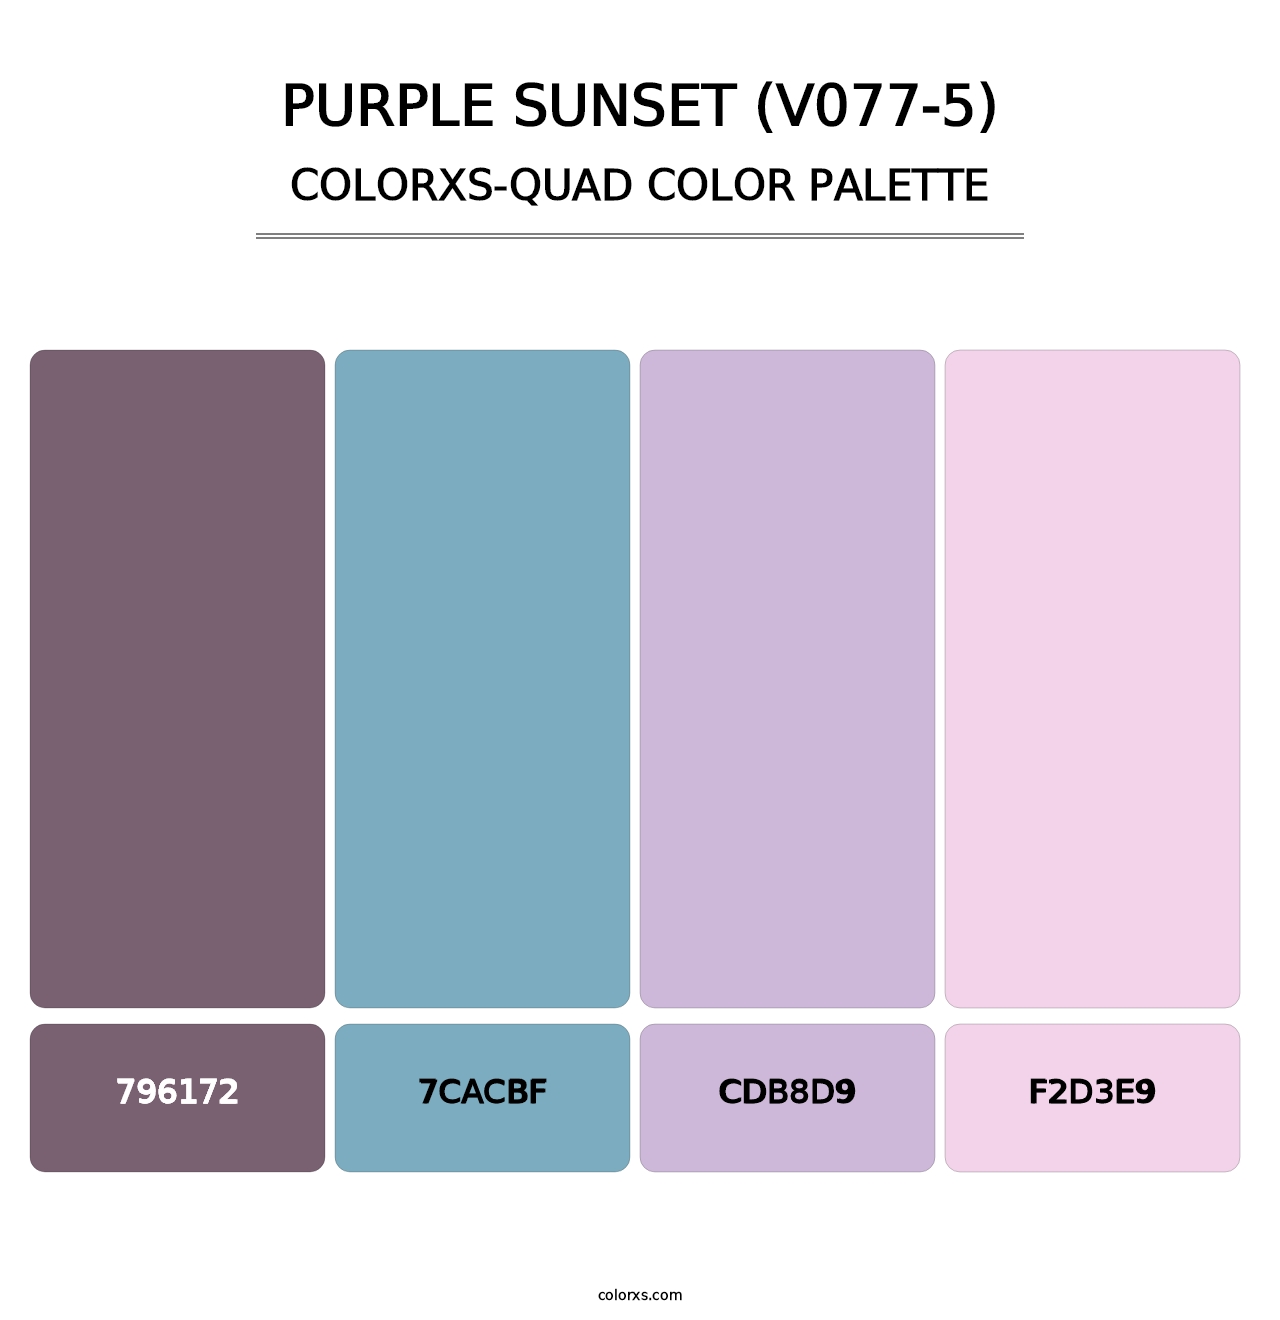 Purple Sunset (V077-5) - Colorxs Quad Palette